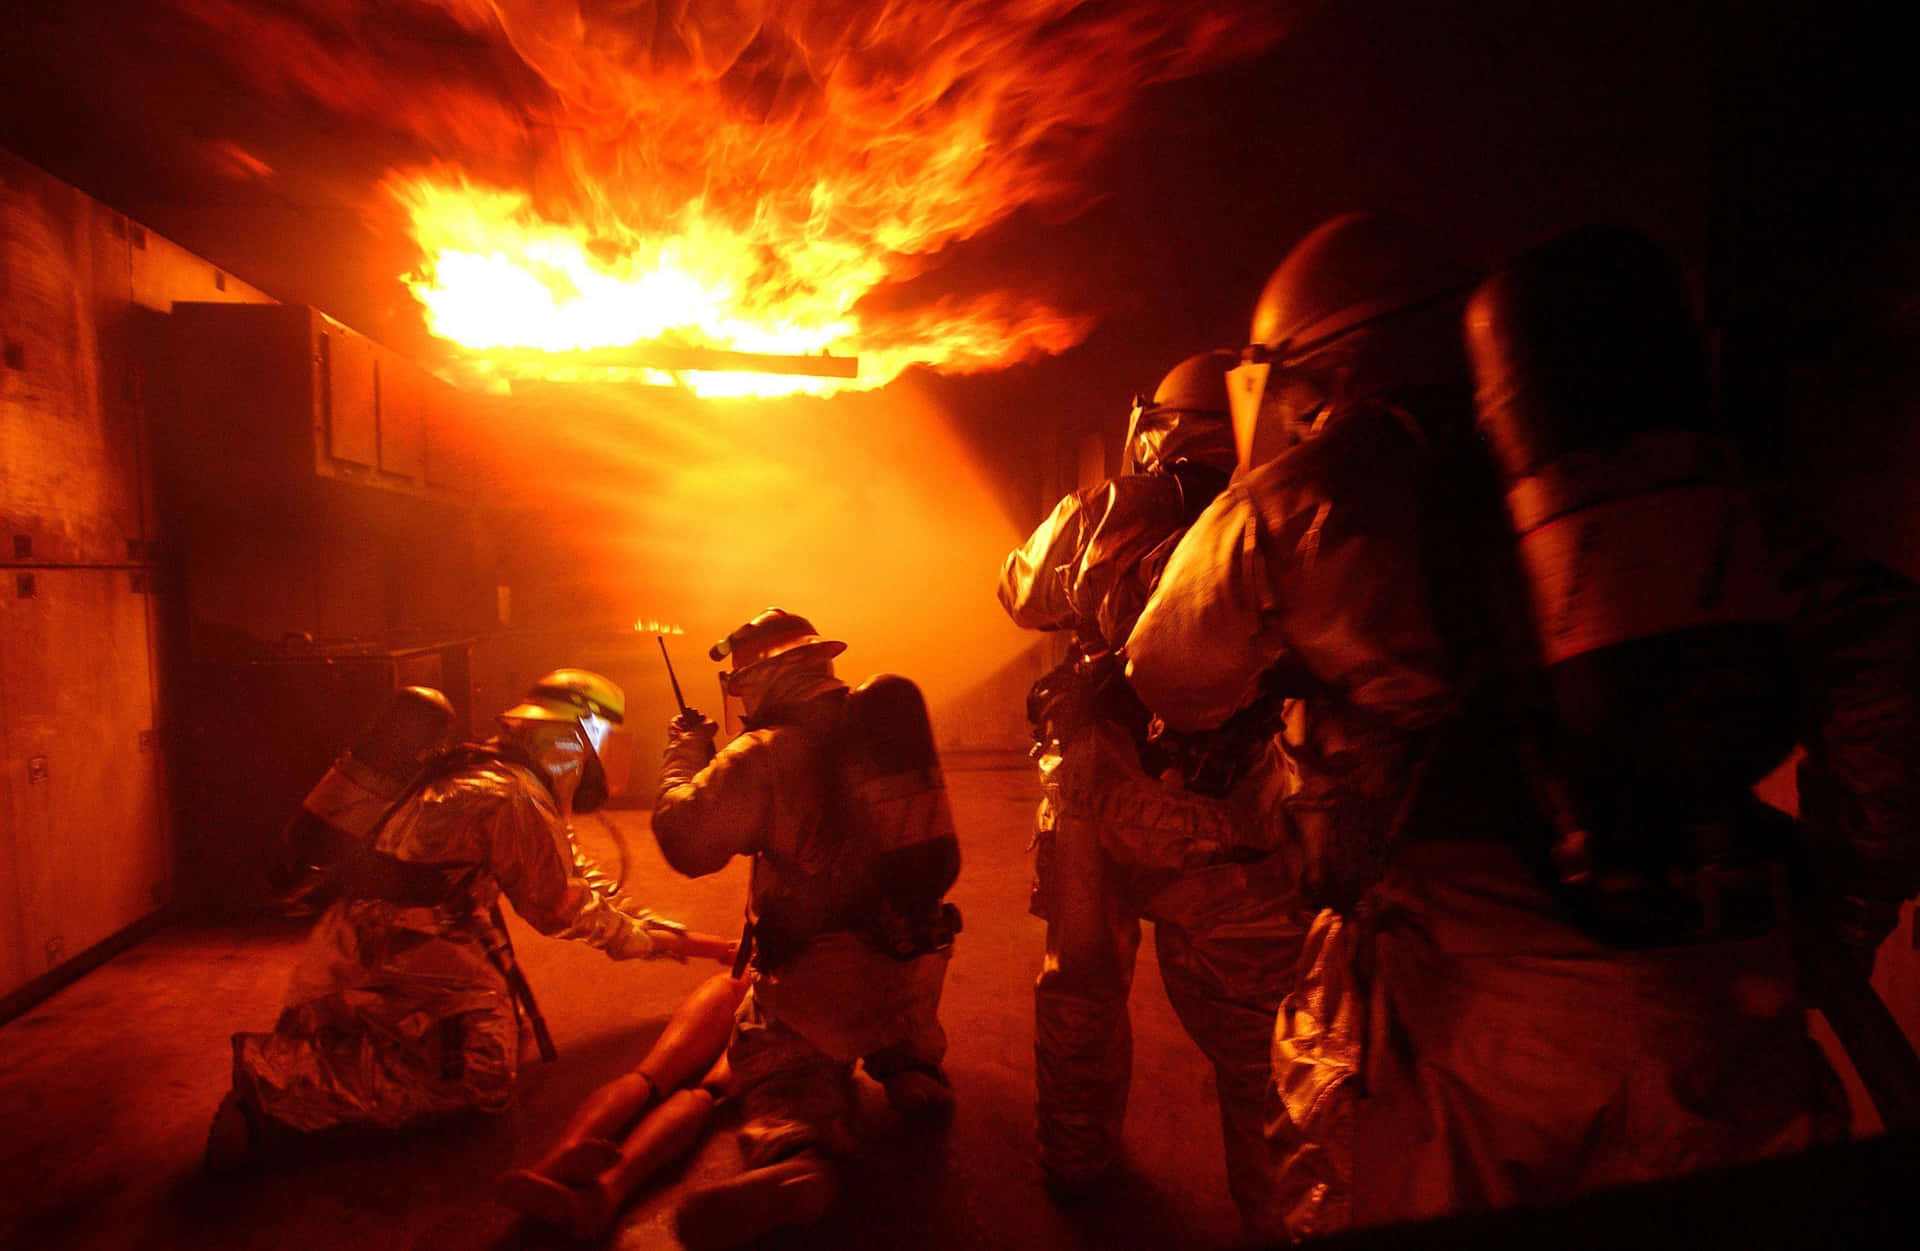 Einegruppe Von Feuerwehrleuten In Einem Dunklen Raum